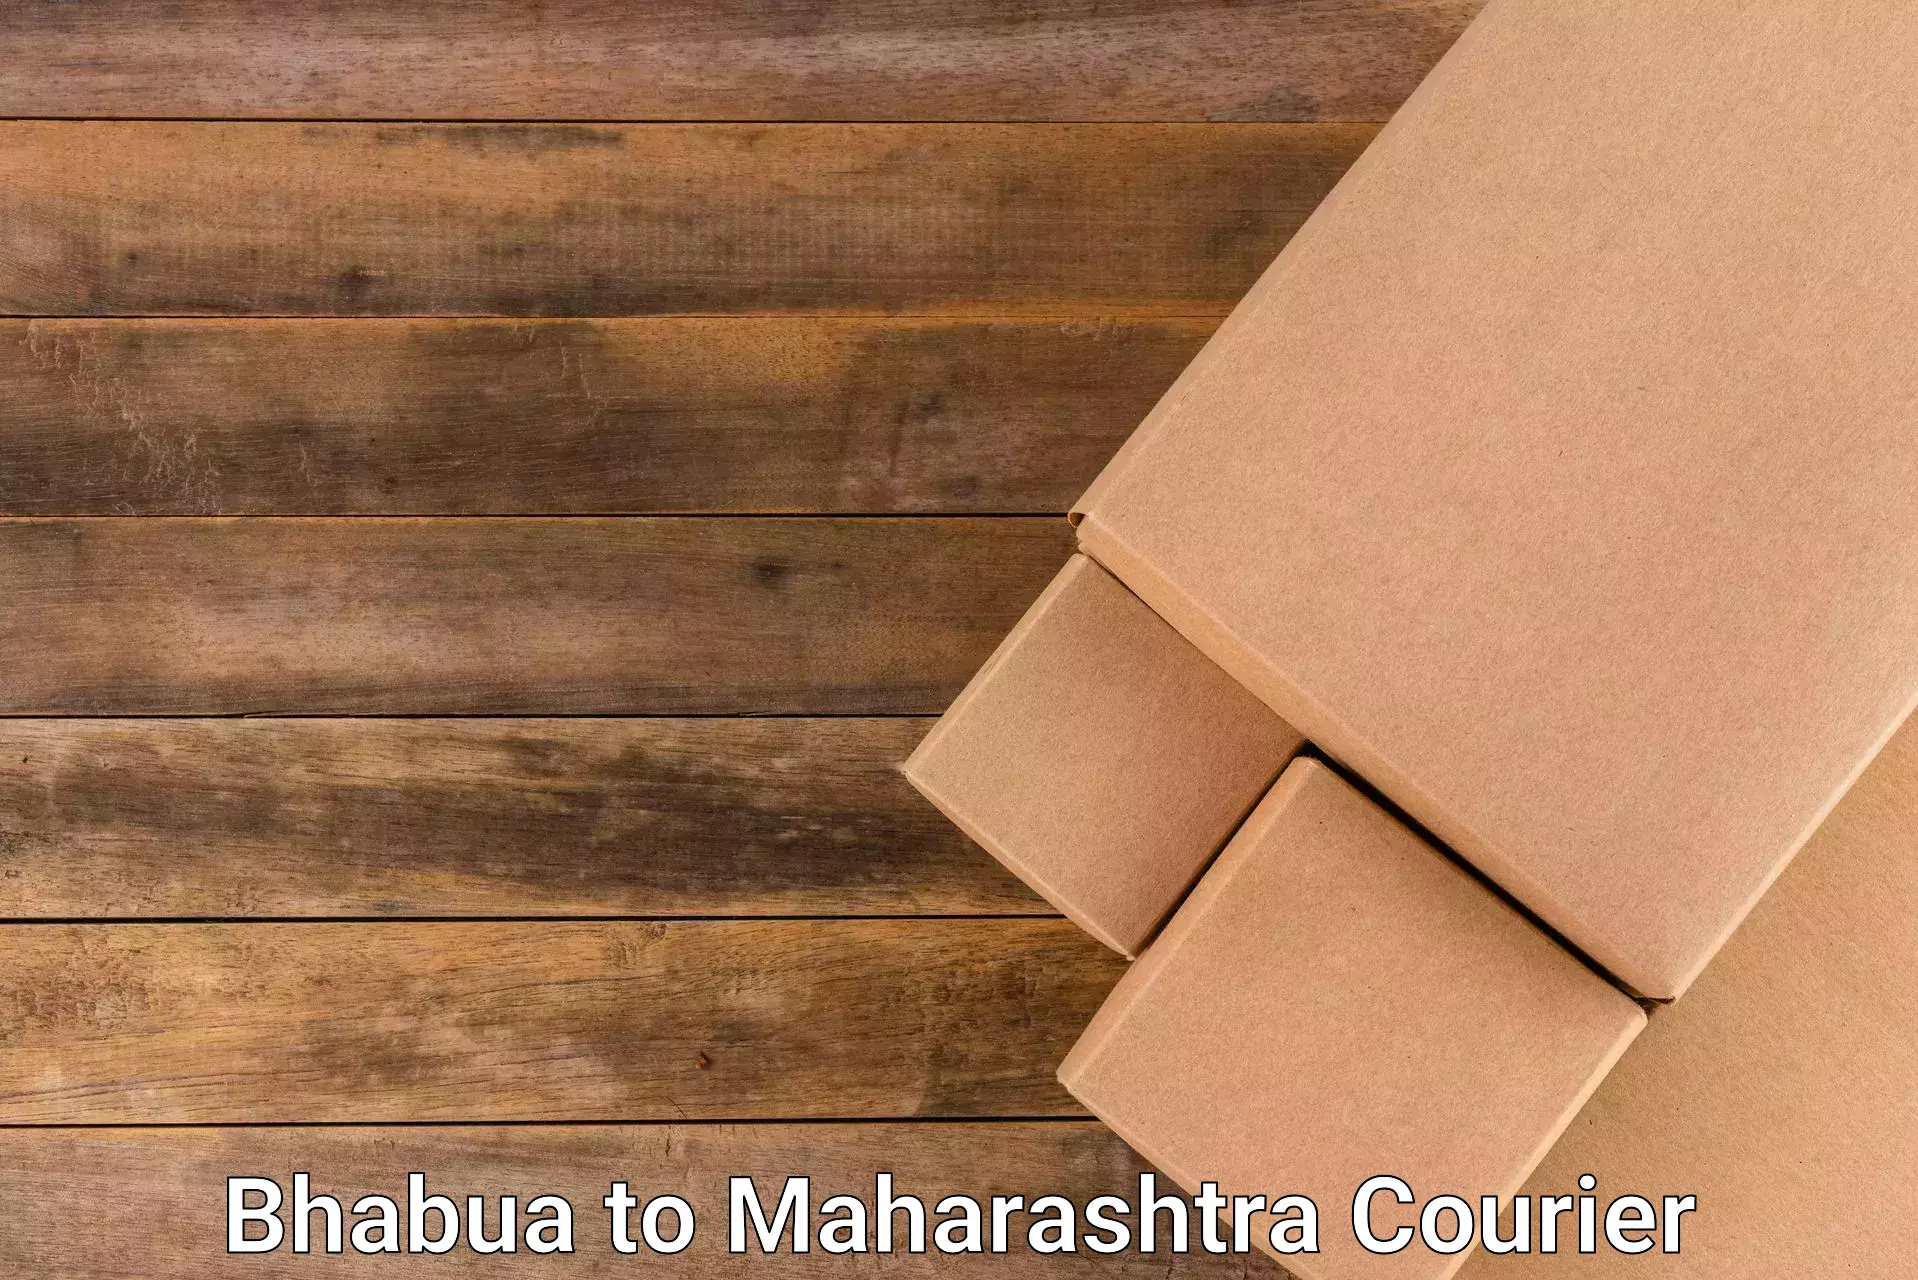 Courier service innovation Bhabua to Maharashtra